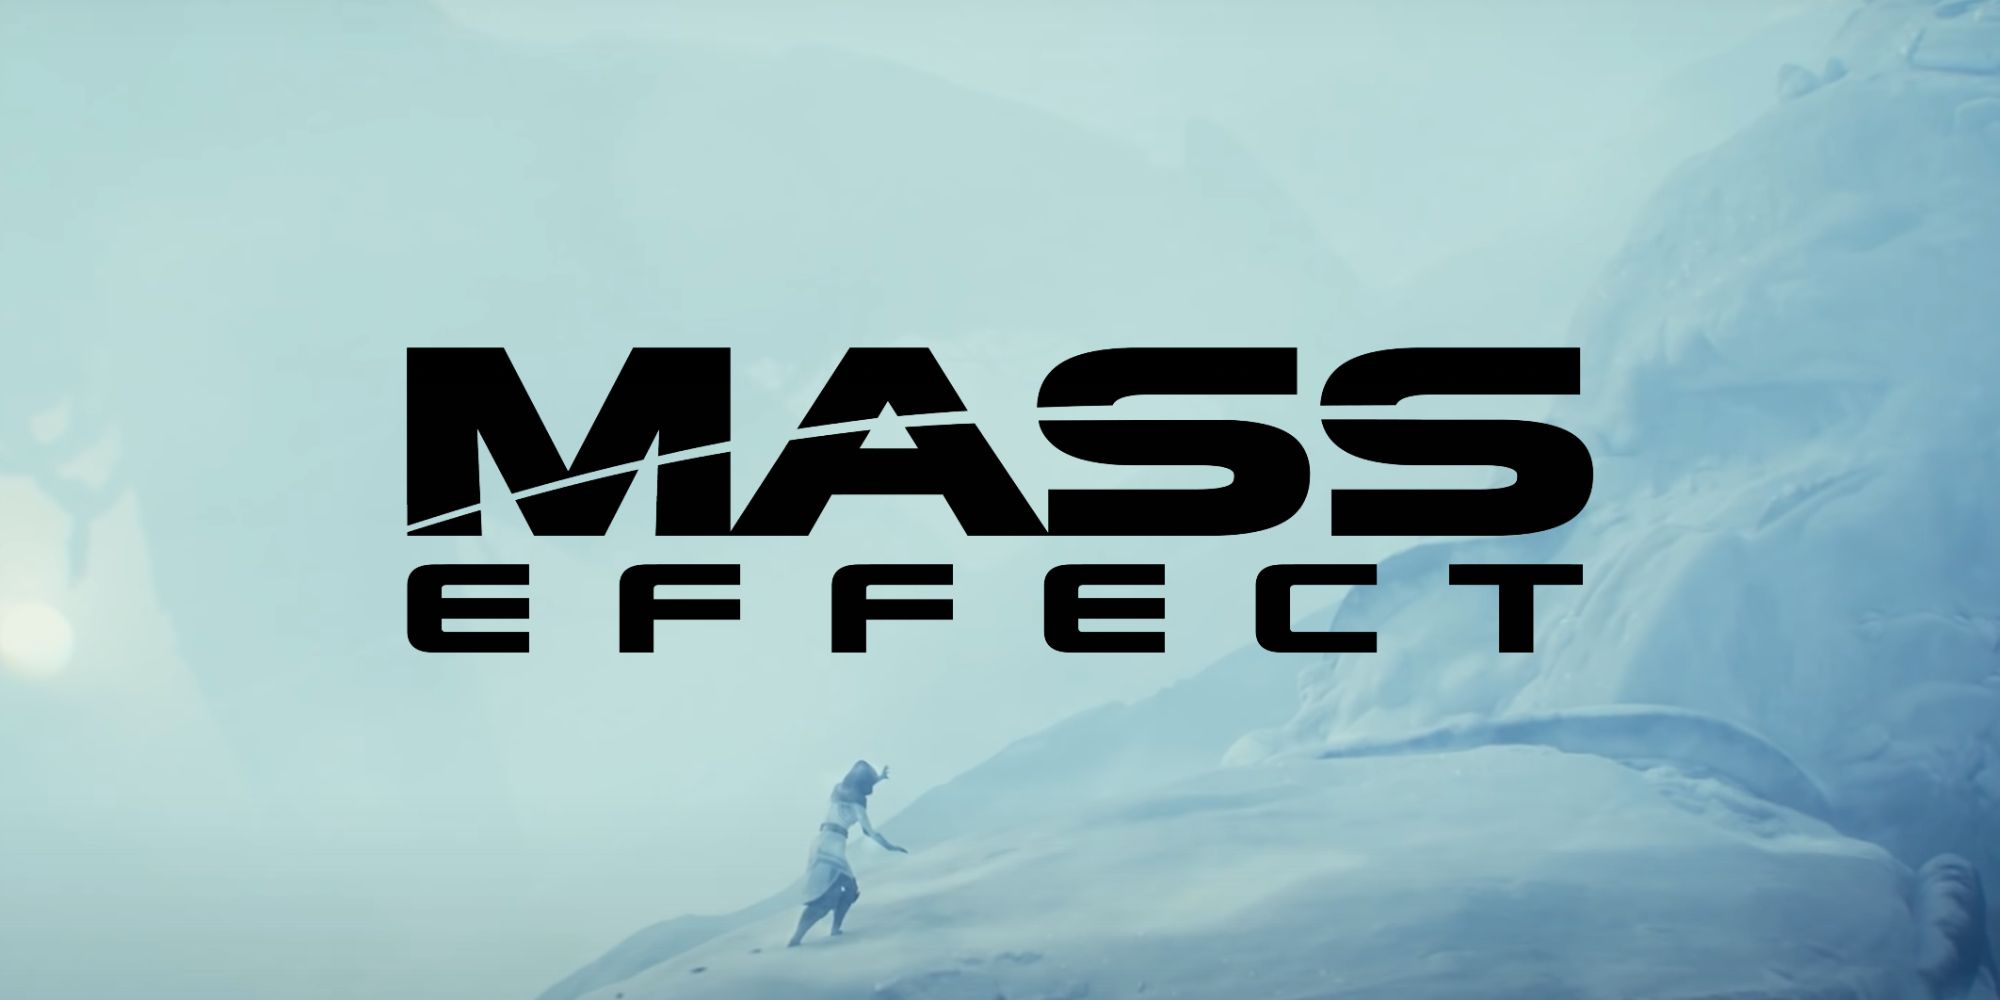 Todos los personajes de Mass Effect que deberían permanecer muertos en ME4